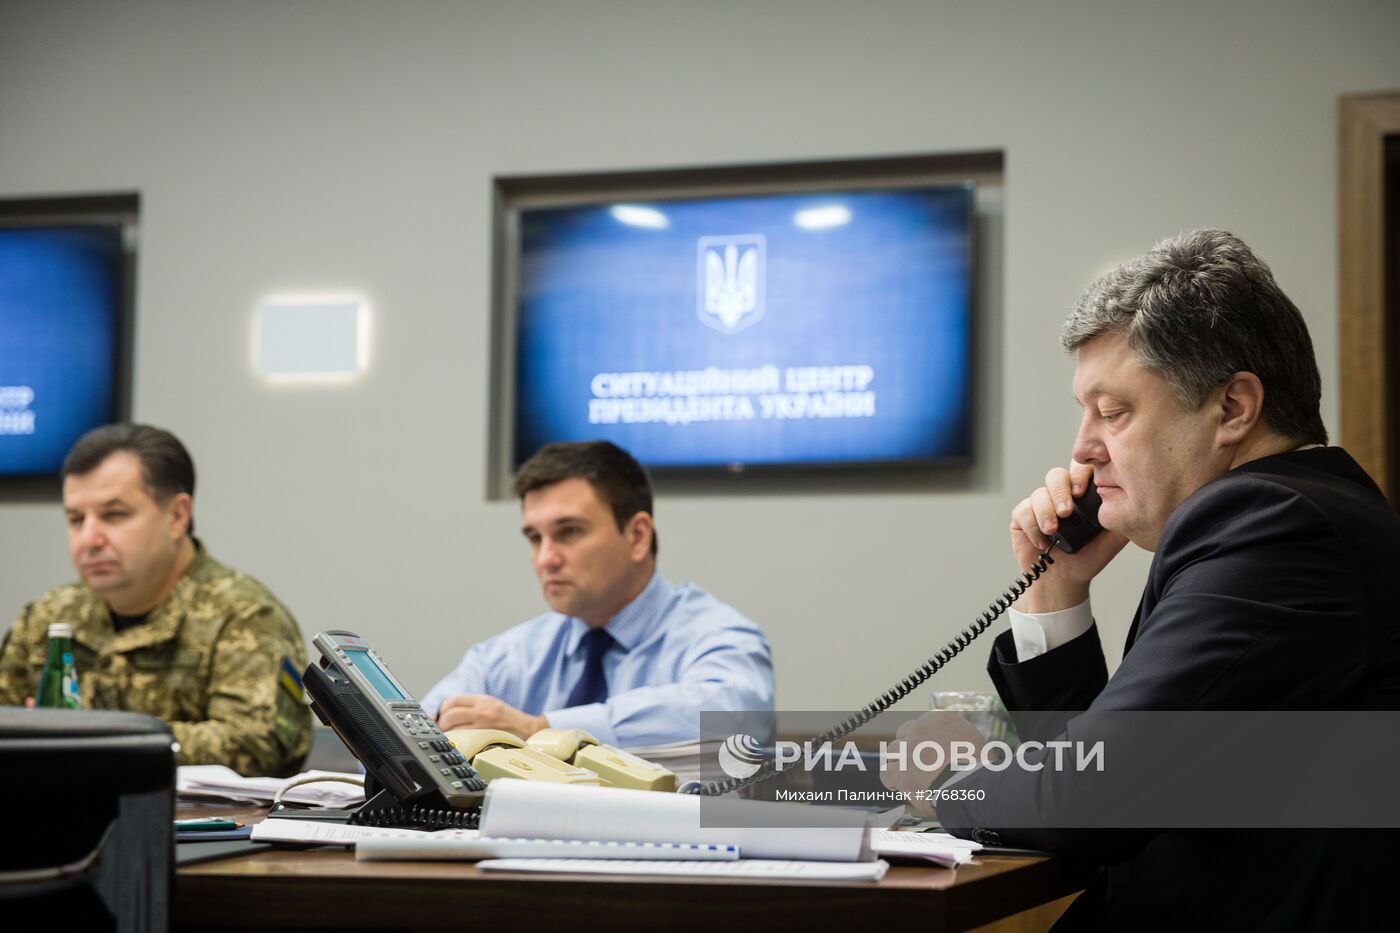 Президент Украины П. Порошенко провел телефонный разговор в "Нормандском формате"